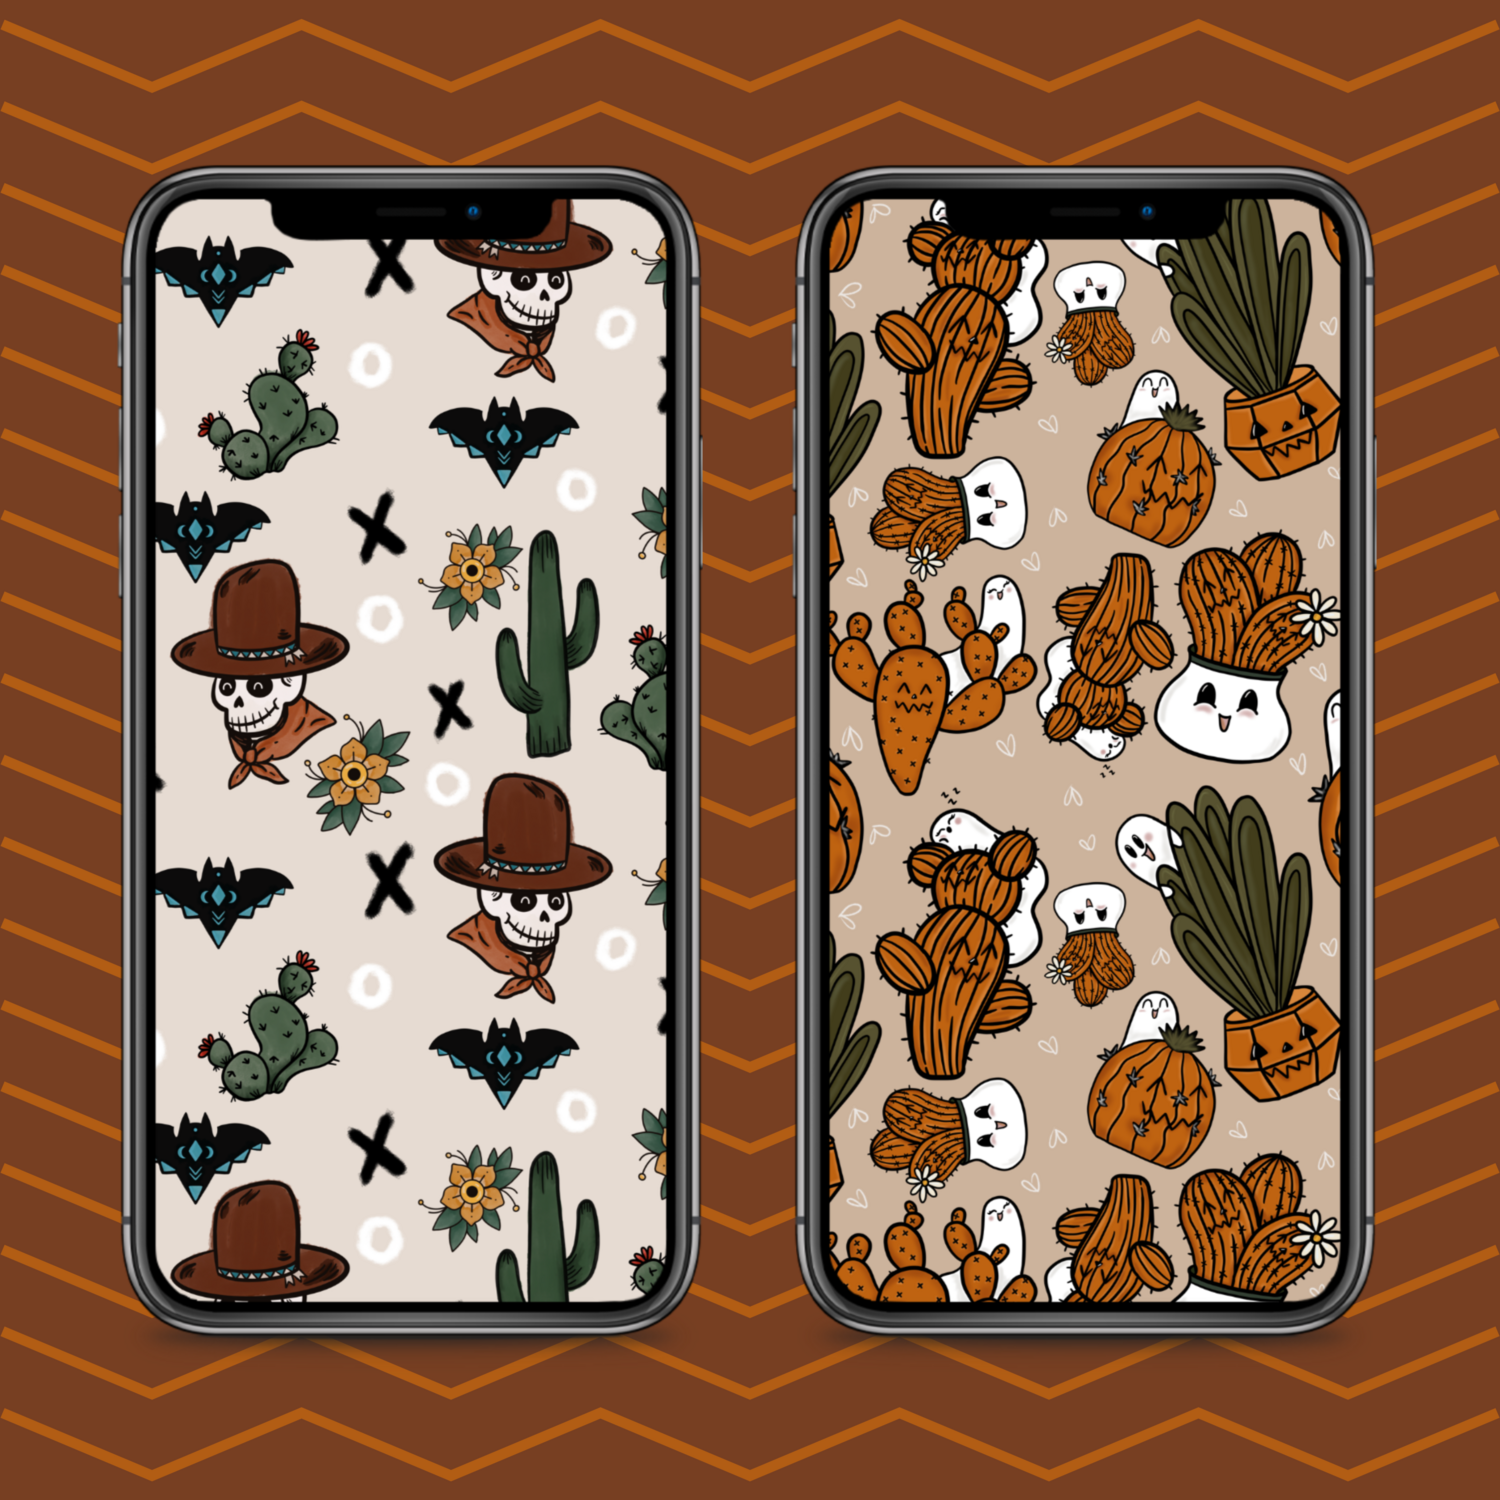 Spooky Desert Phone Wallpaper Pack